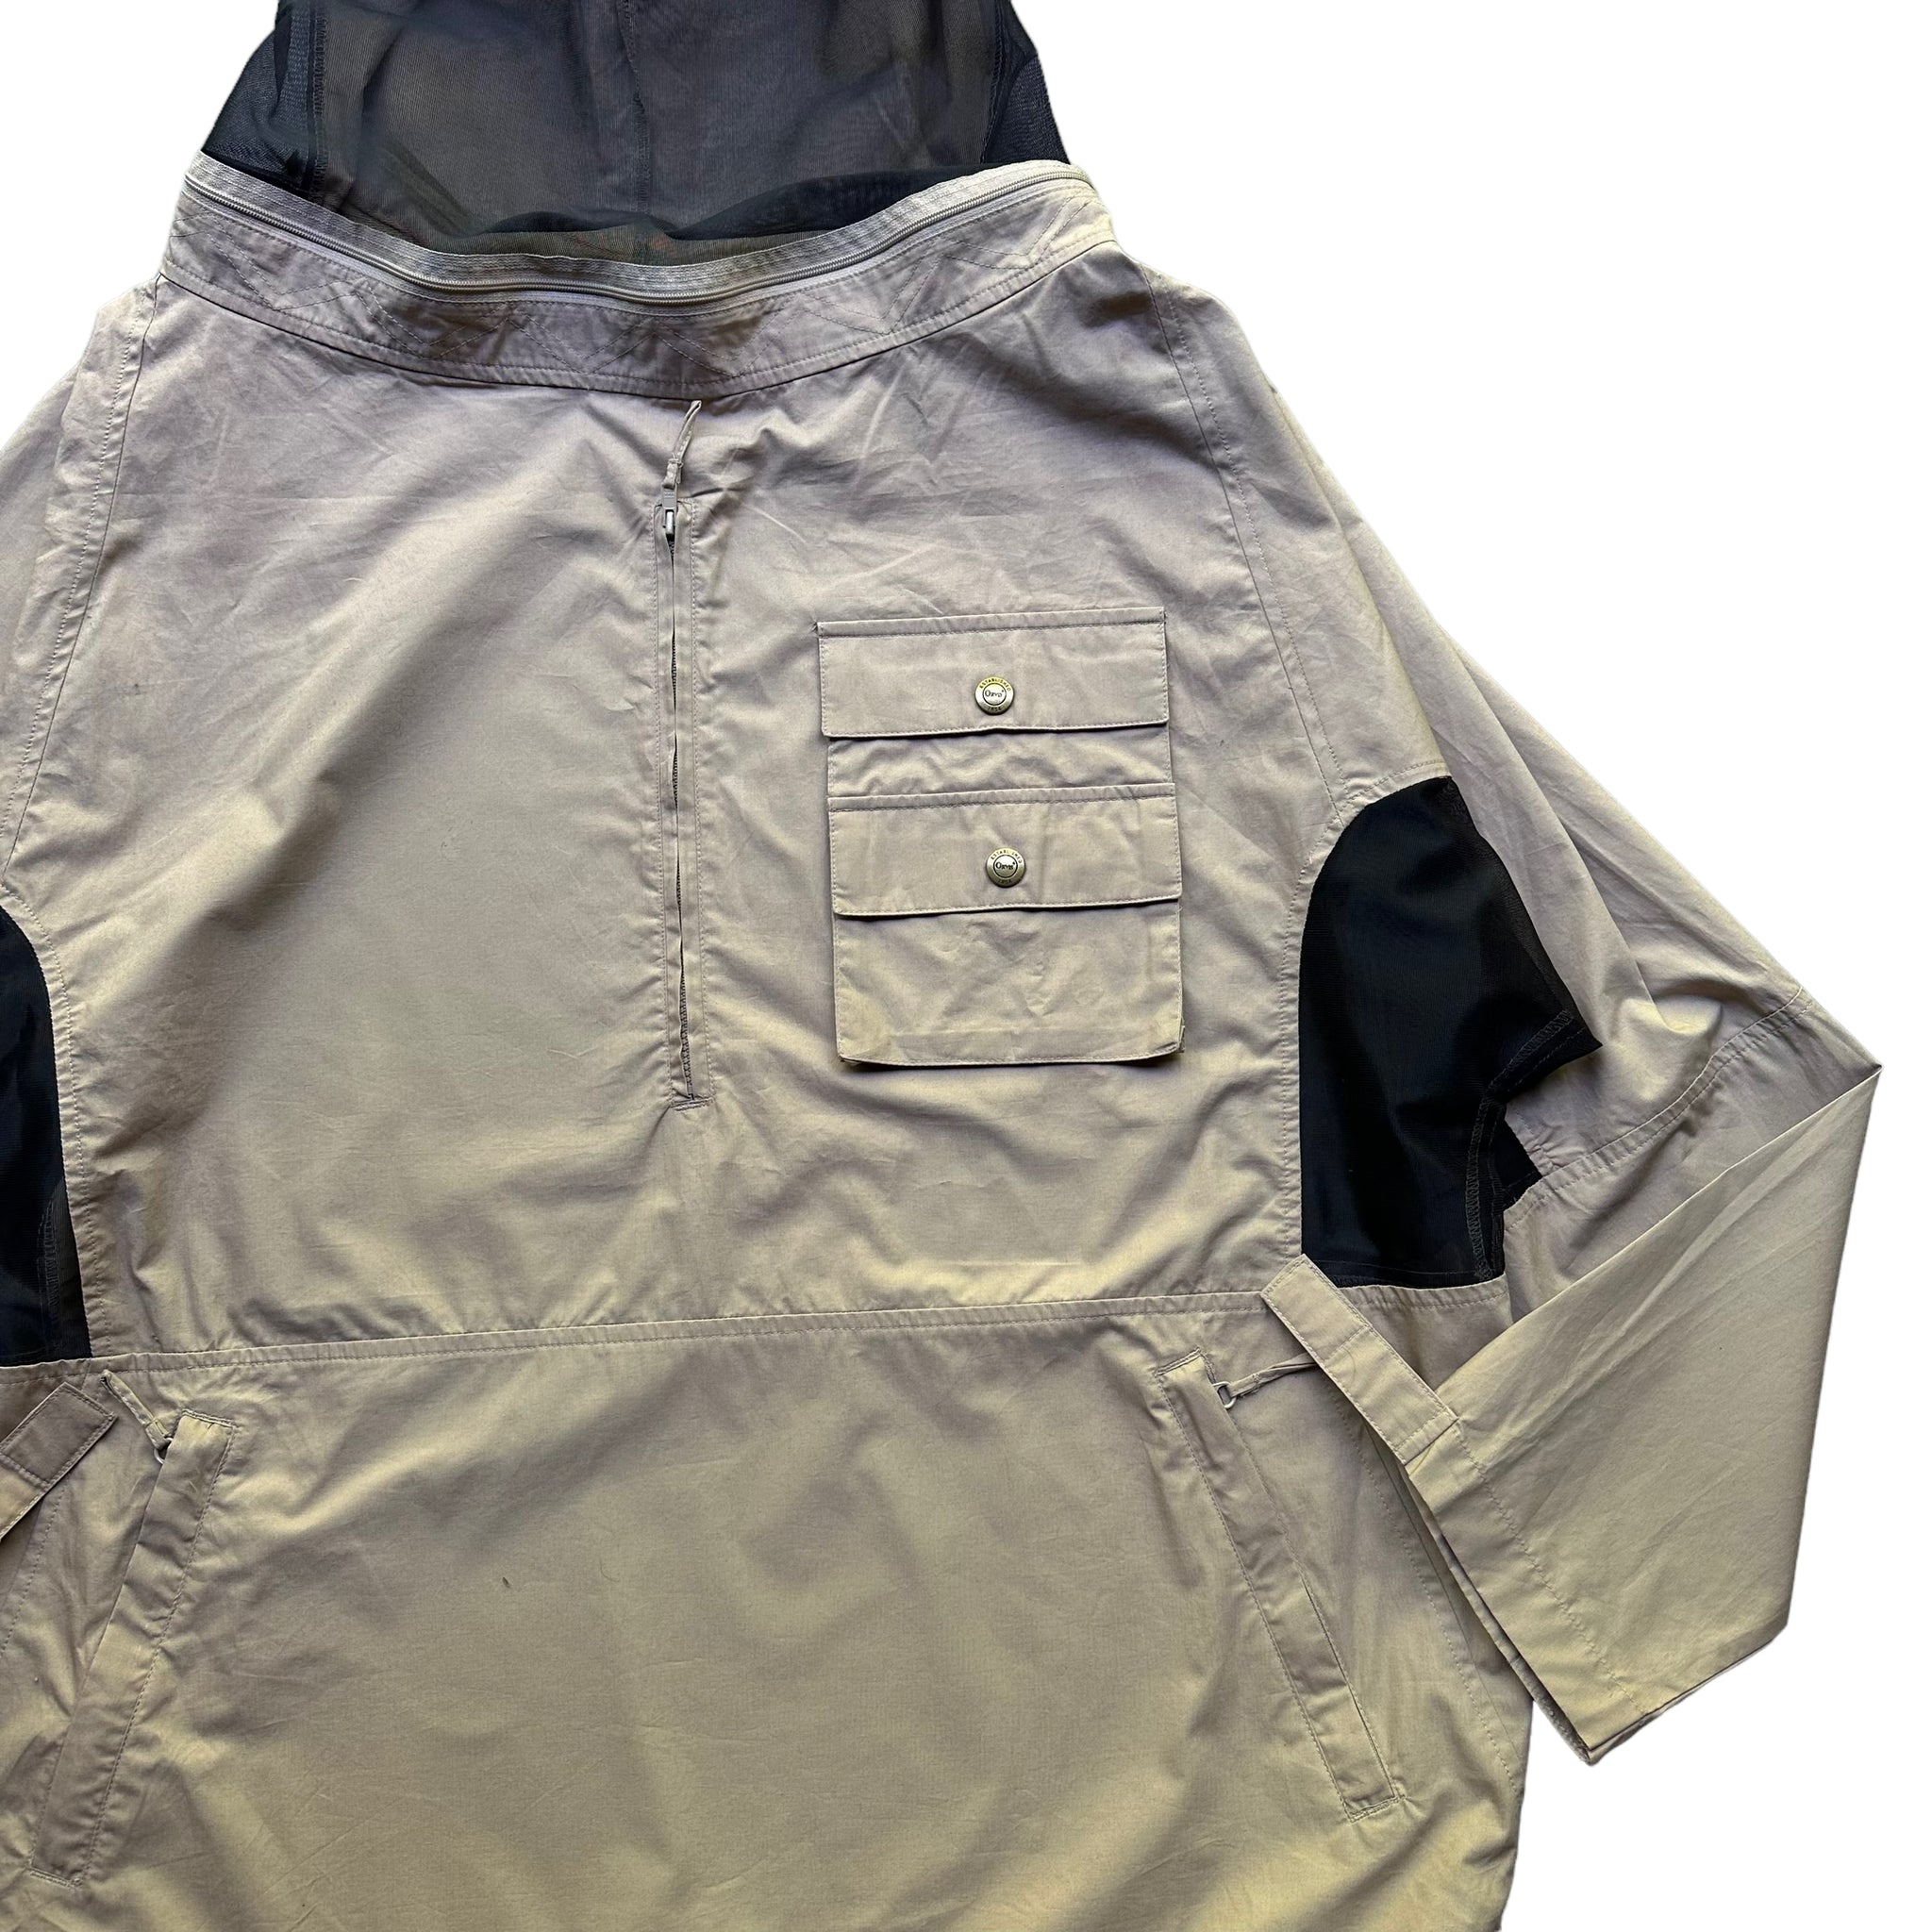 Orvis bug jacket large